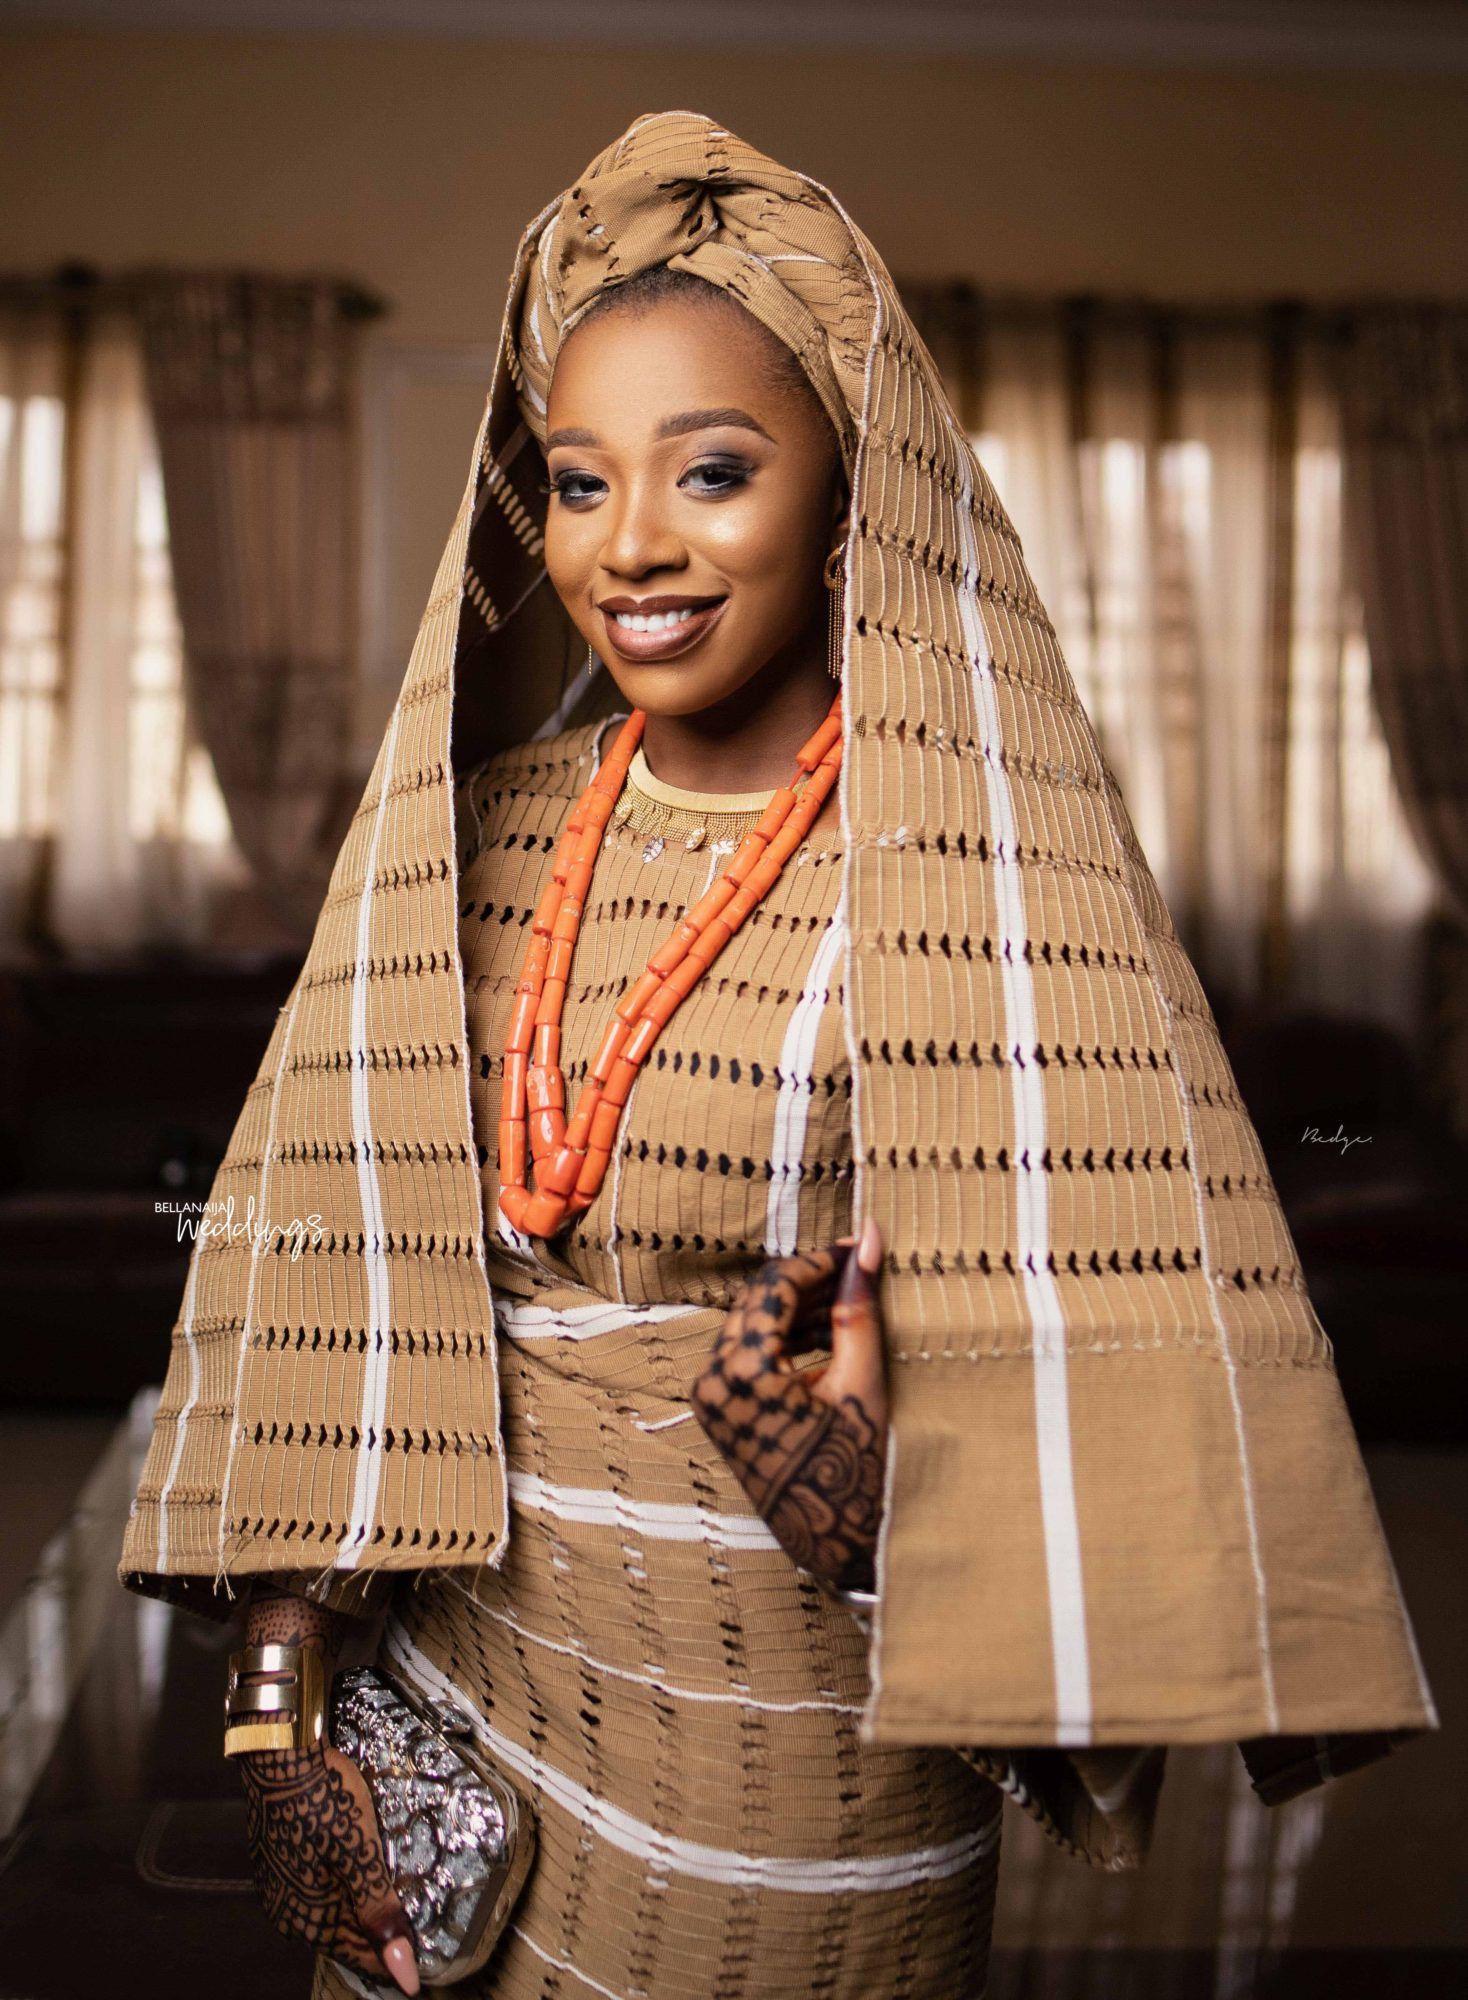 Le gusta a todos bella naija, Love Culture: vestidos nigerianos  